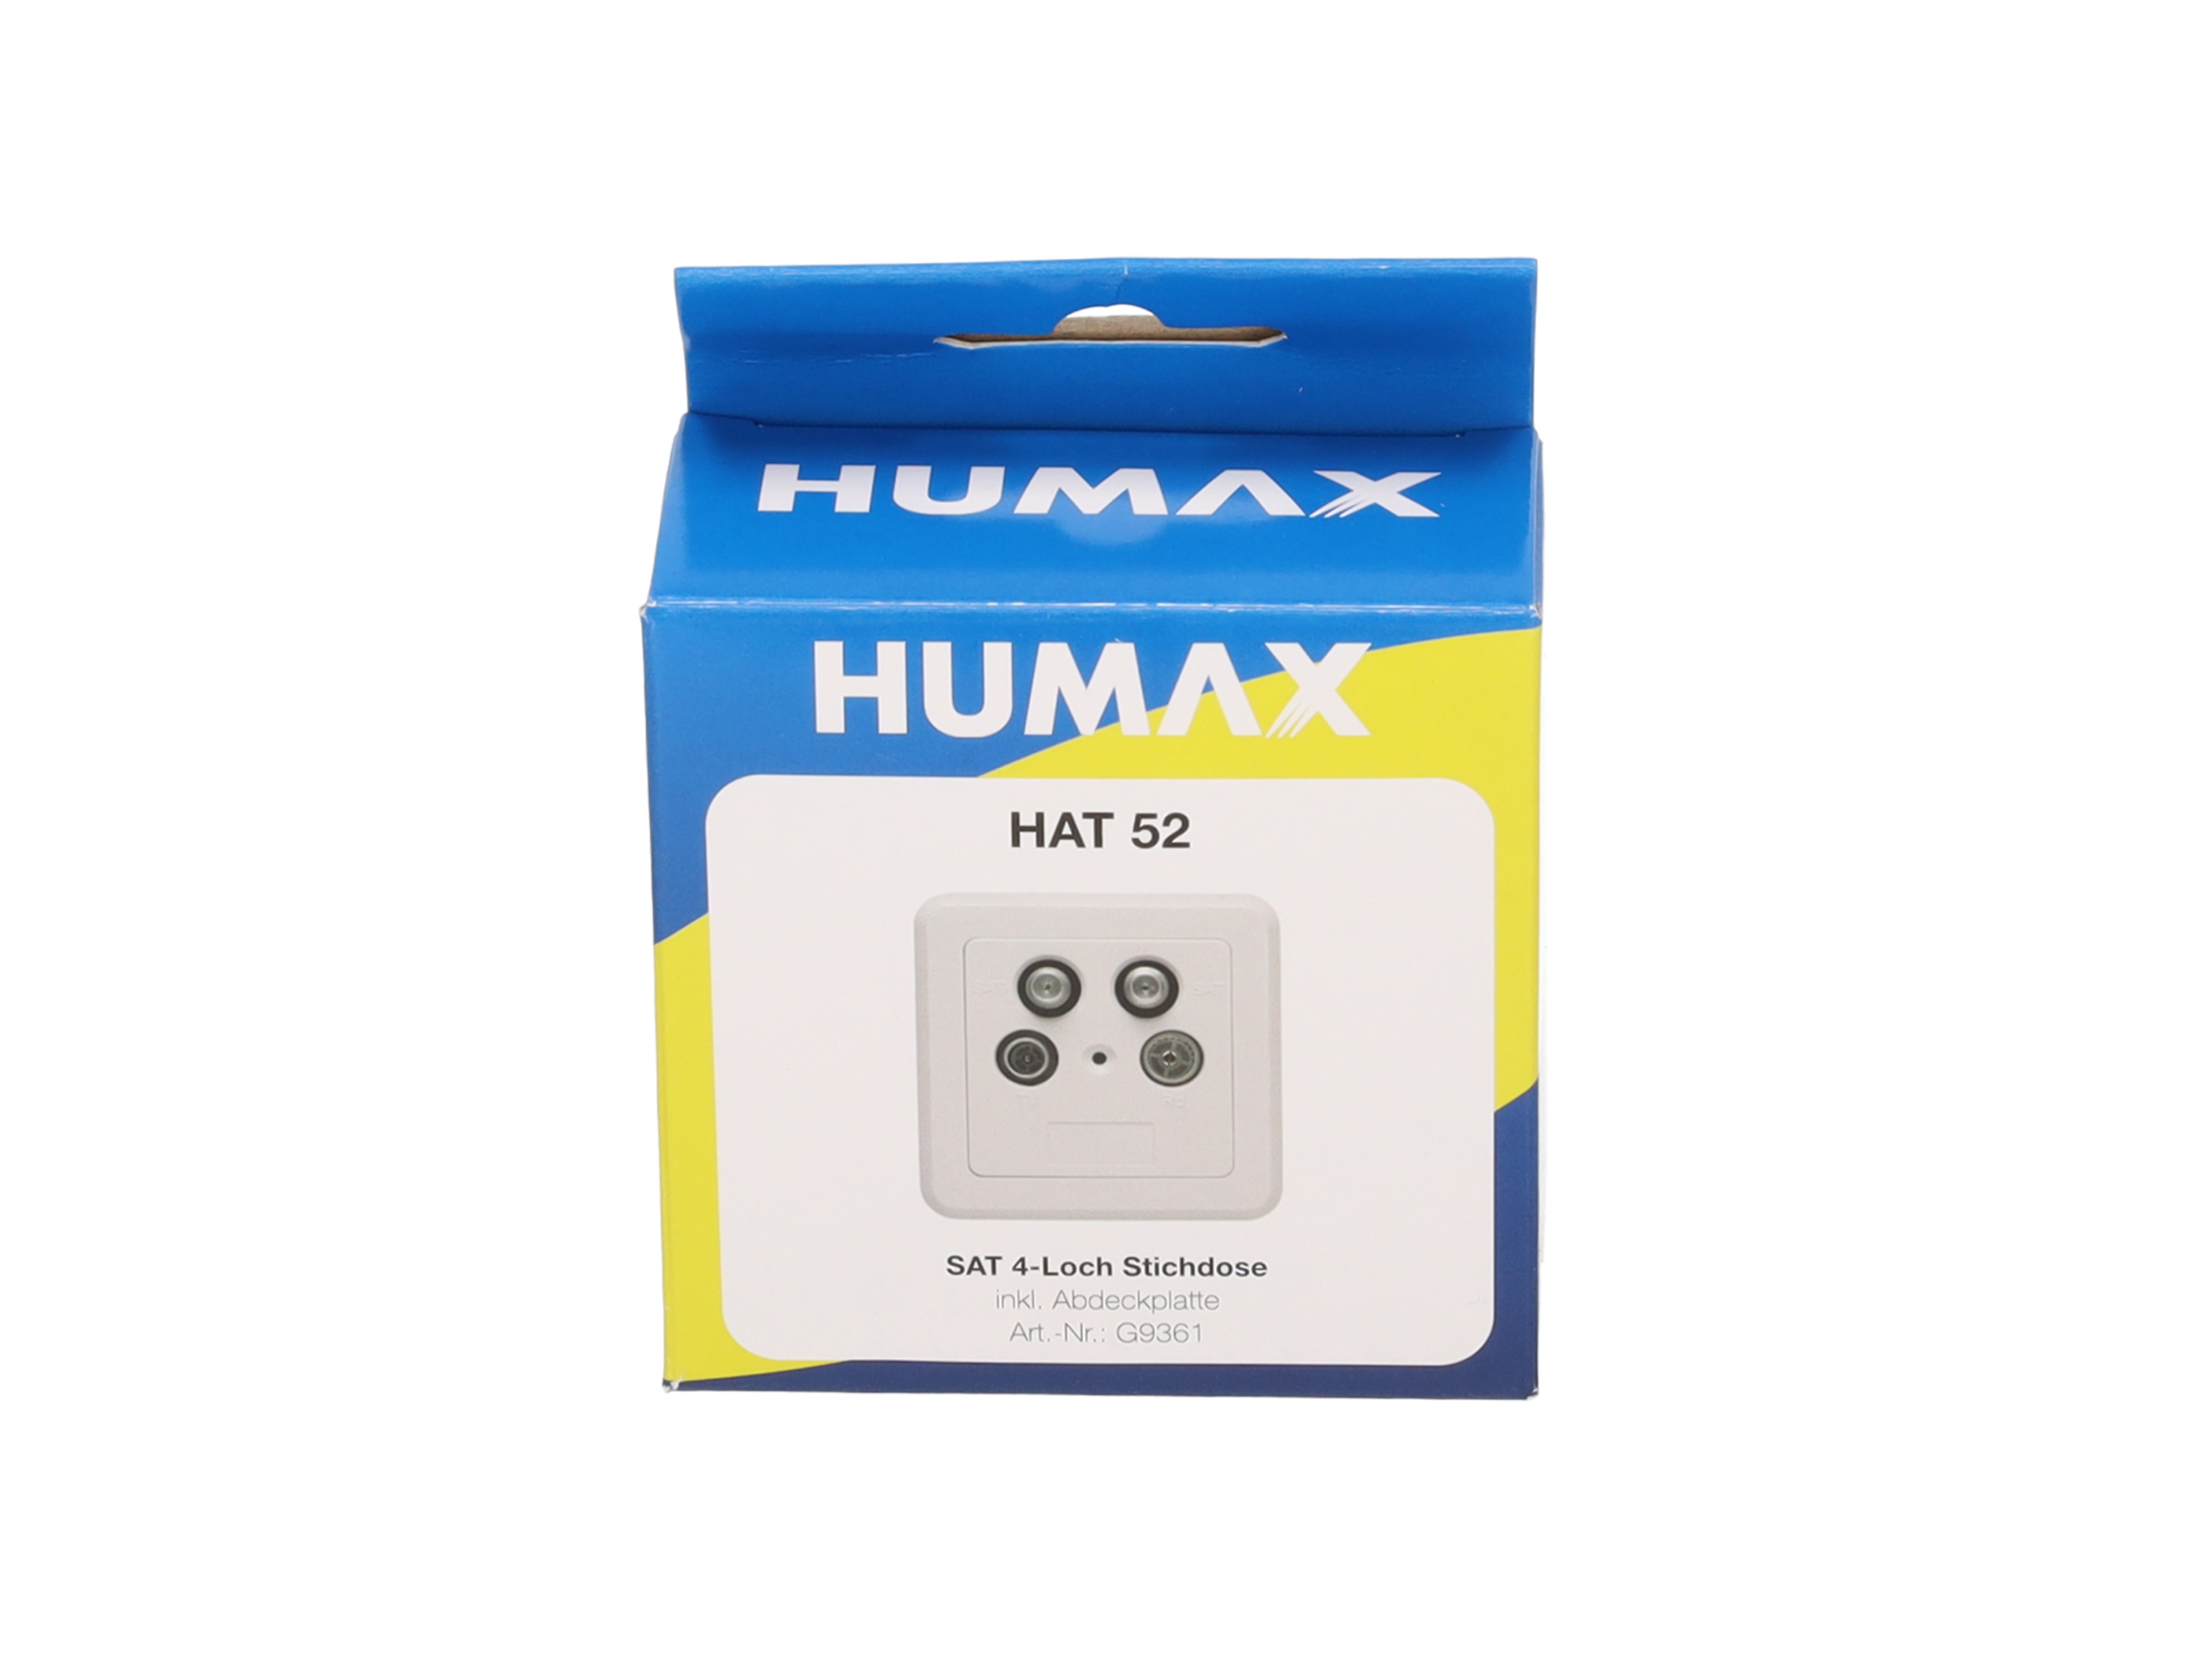 HUMAX HAT Antennenenddose 52 4-Loch mit Abdeckung